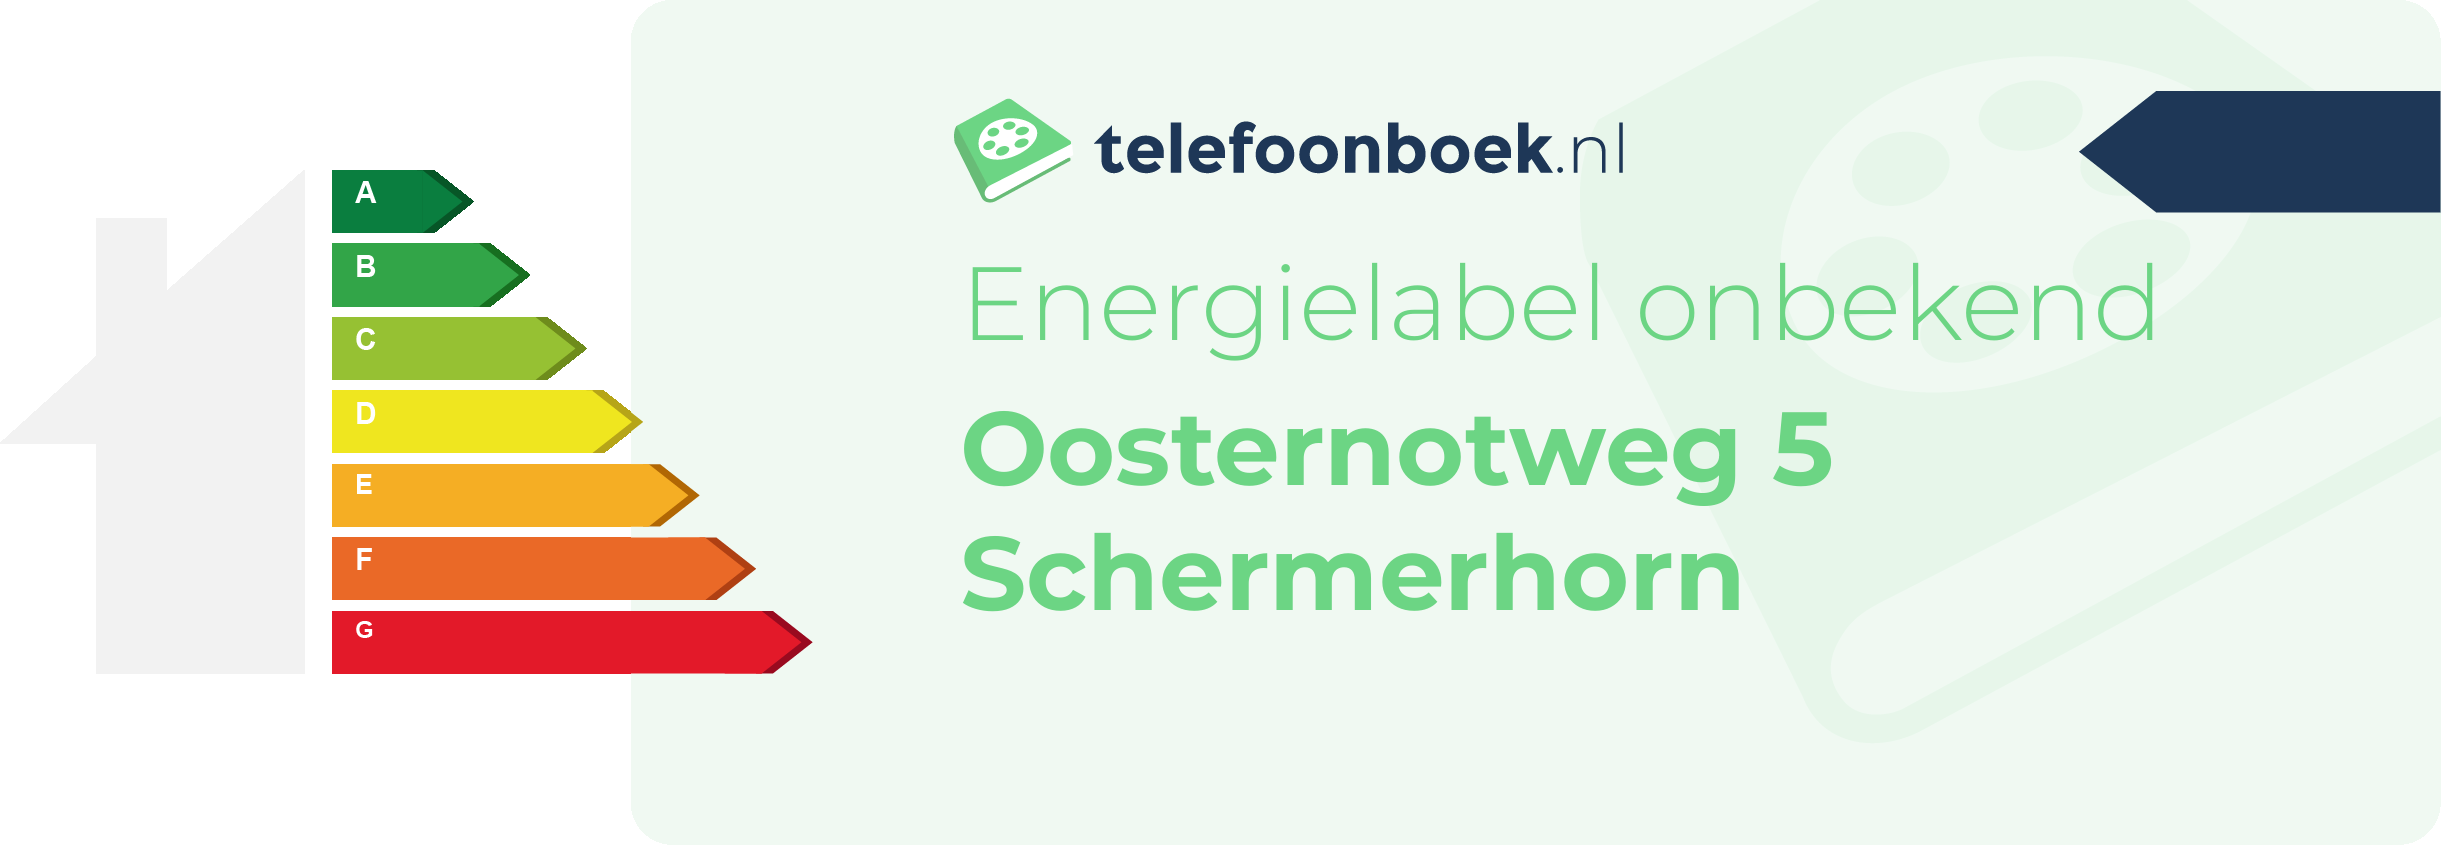 Energielabel Oosternotweg 5 Schermerhorn